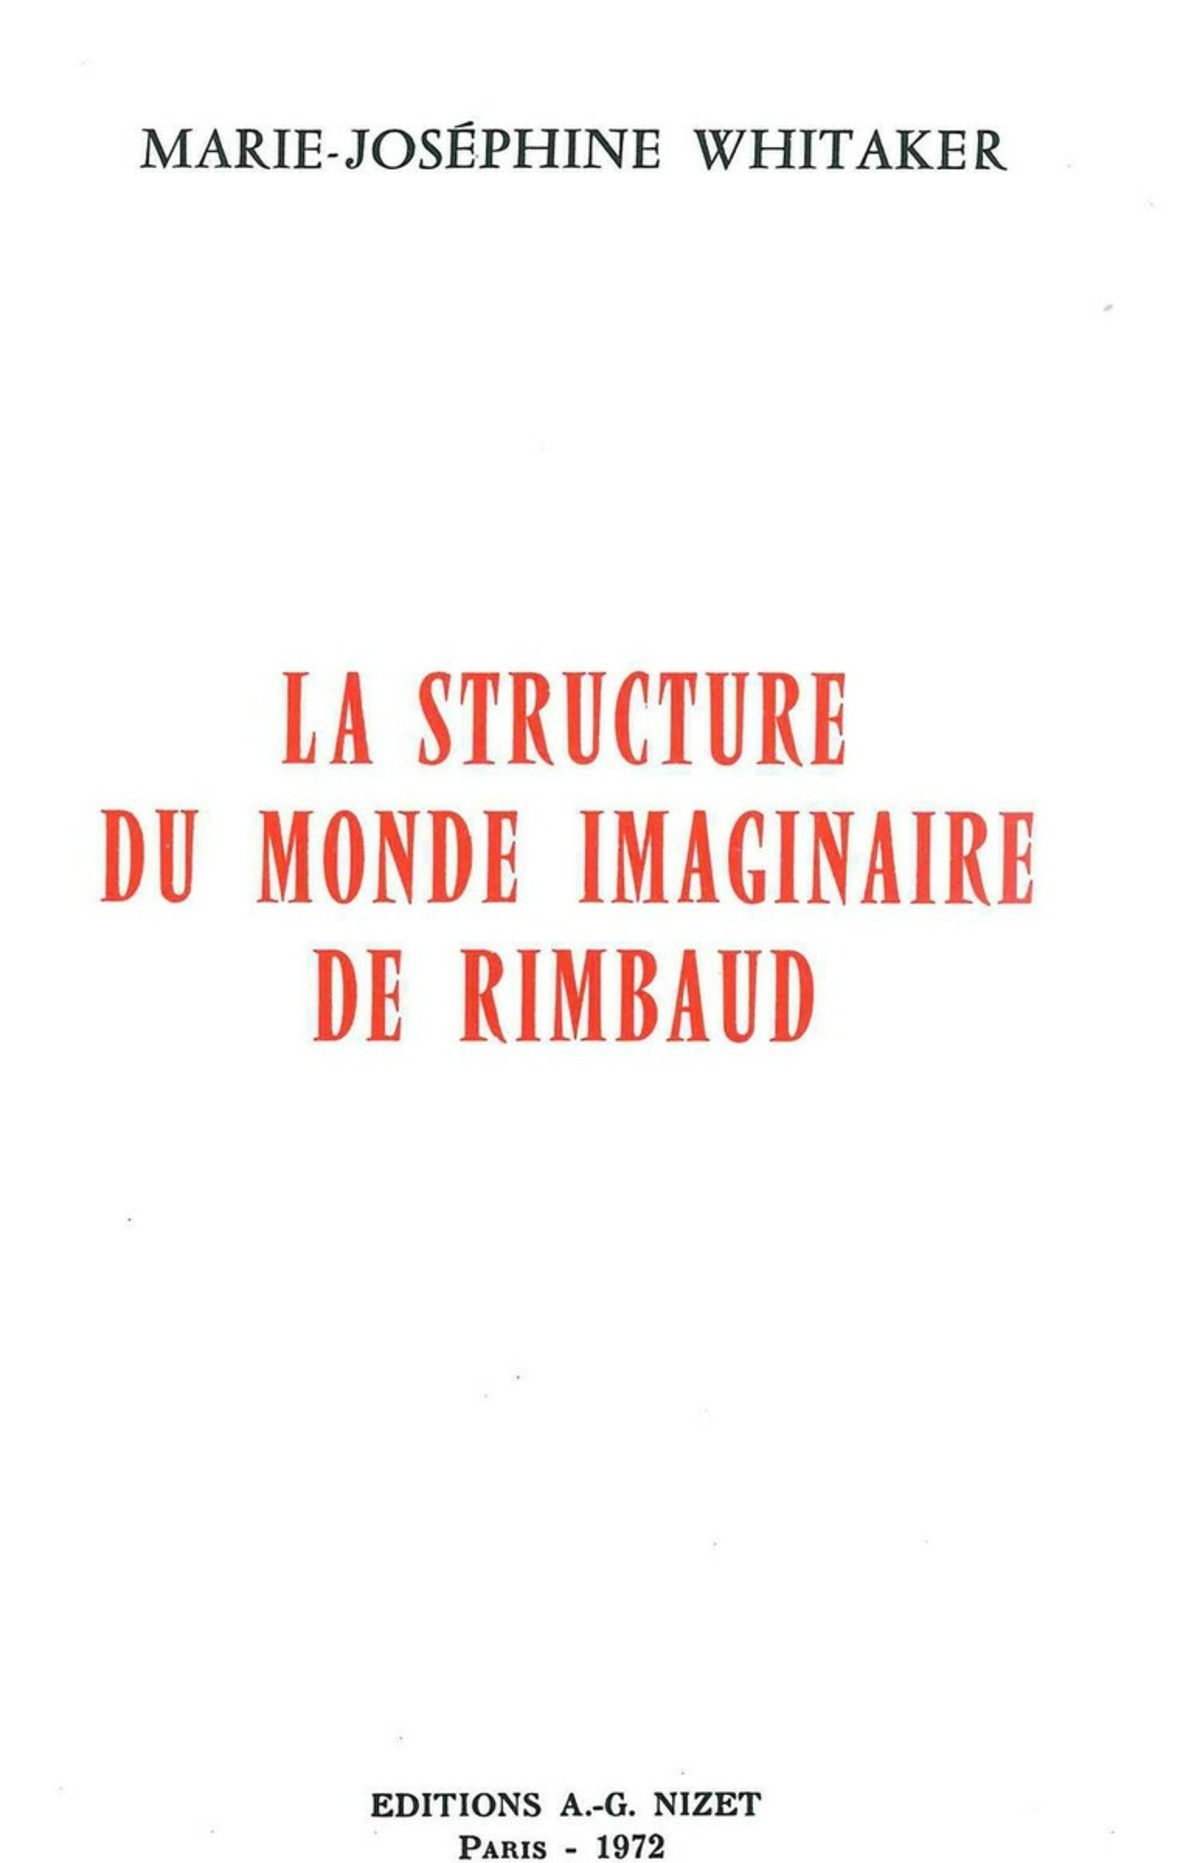 La Structure du monde imaginaire de Rimbaud